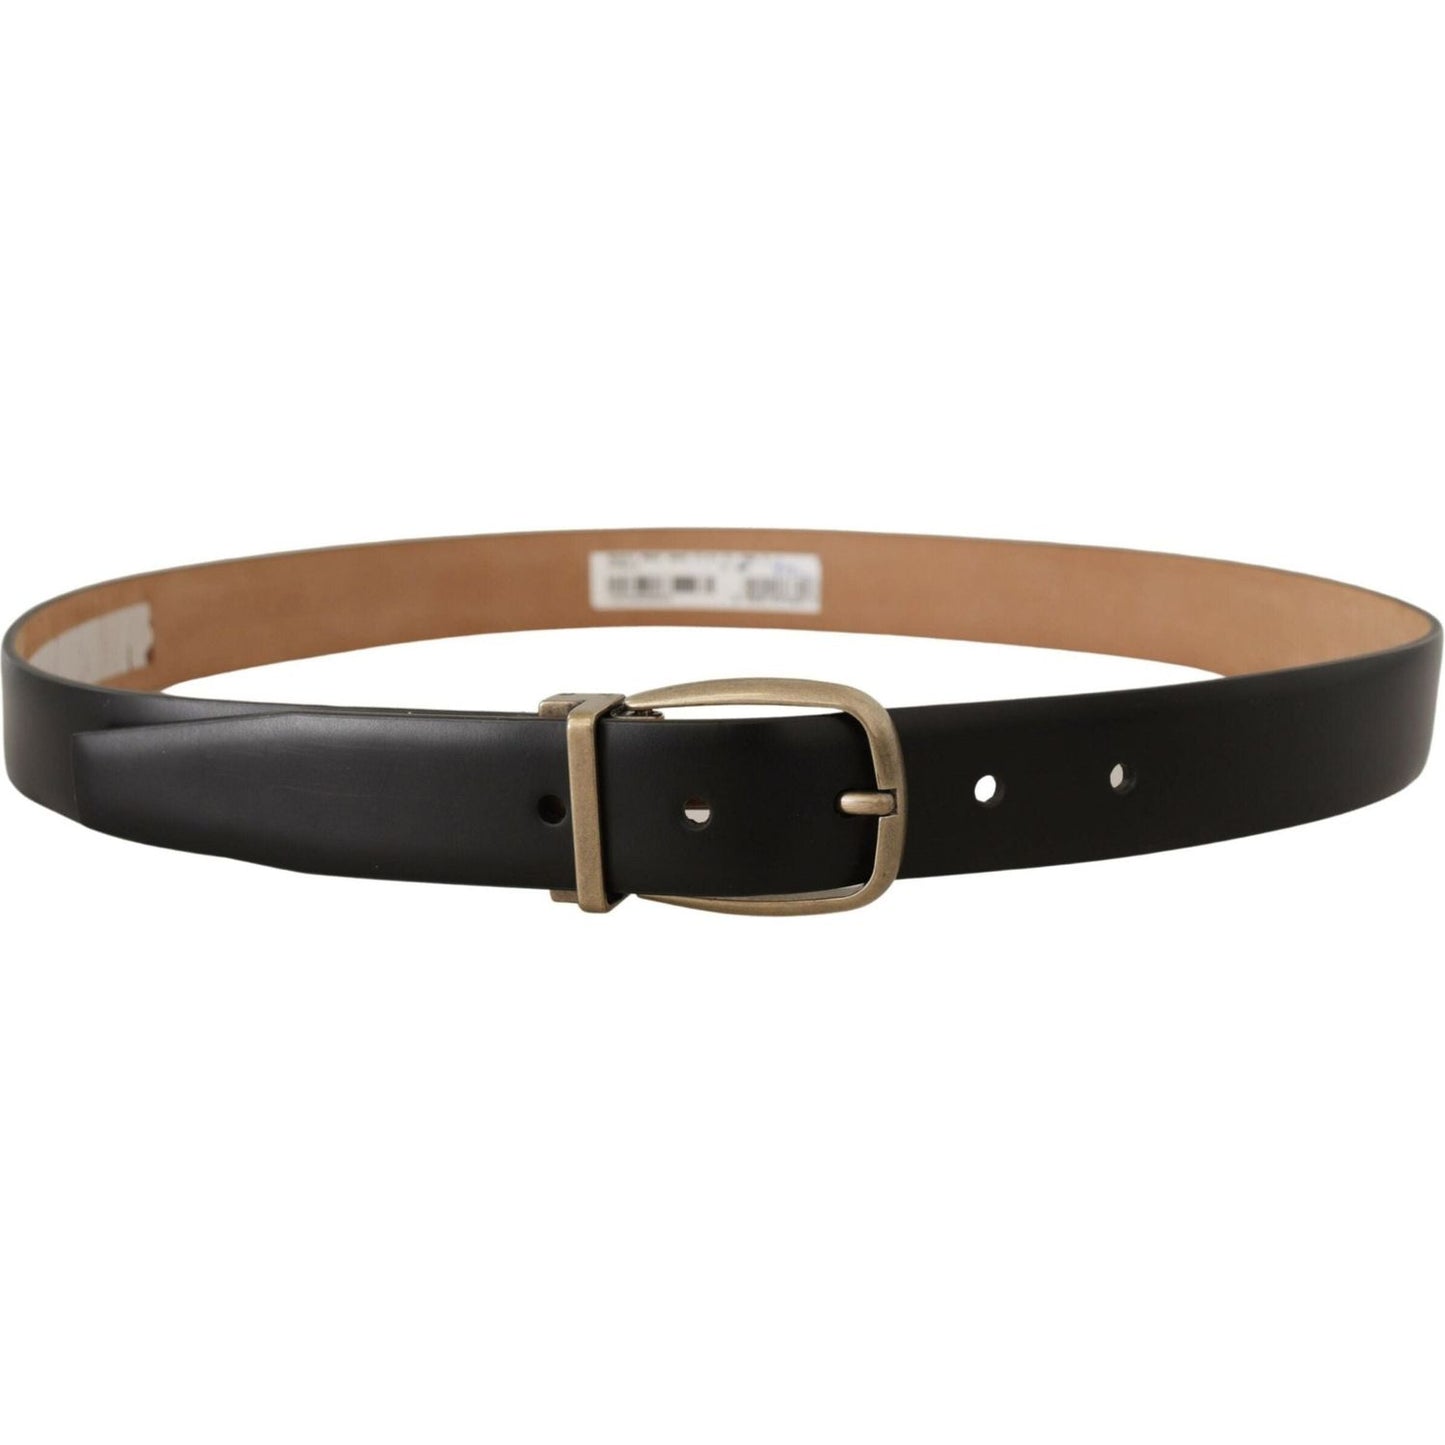 Dolce & Gabbana Elegant Black Leather Belt with Metal Buckle black-brown-backend-leather-vintage-metal-buckle-belt